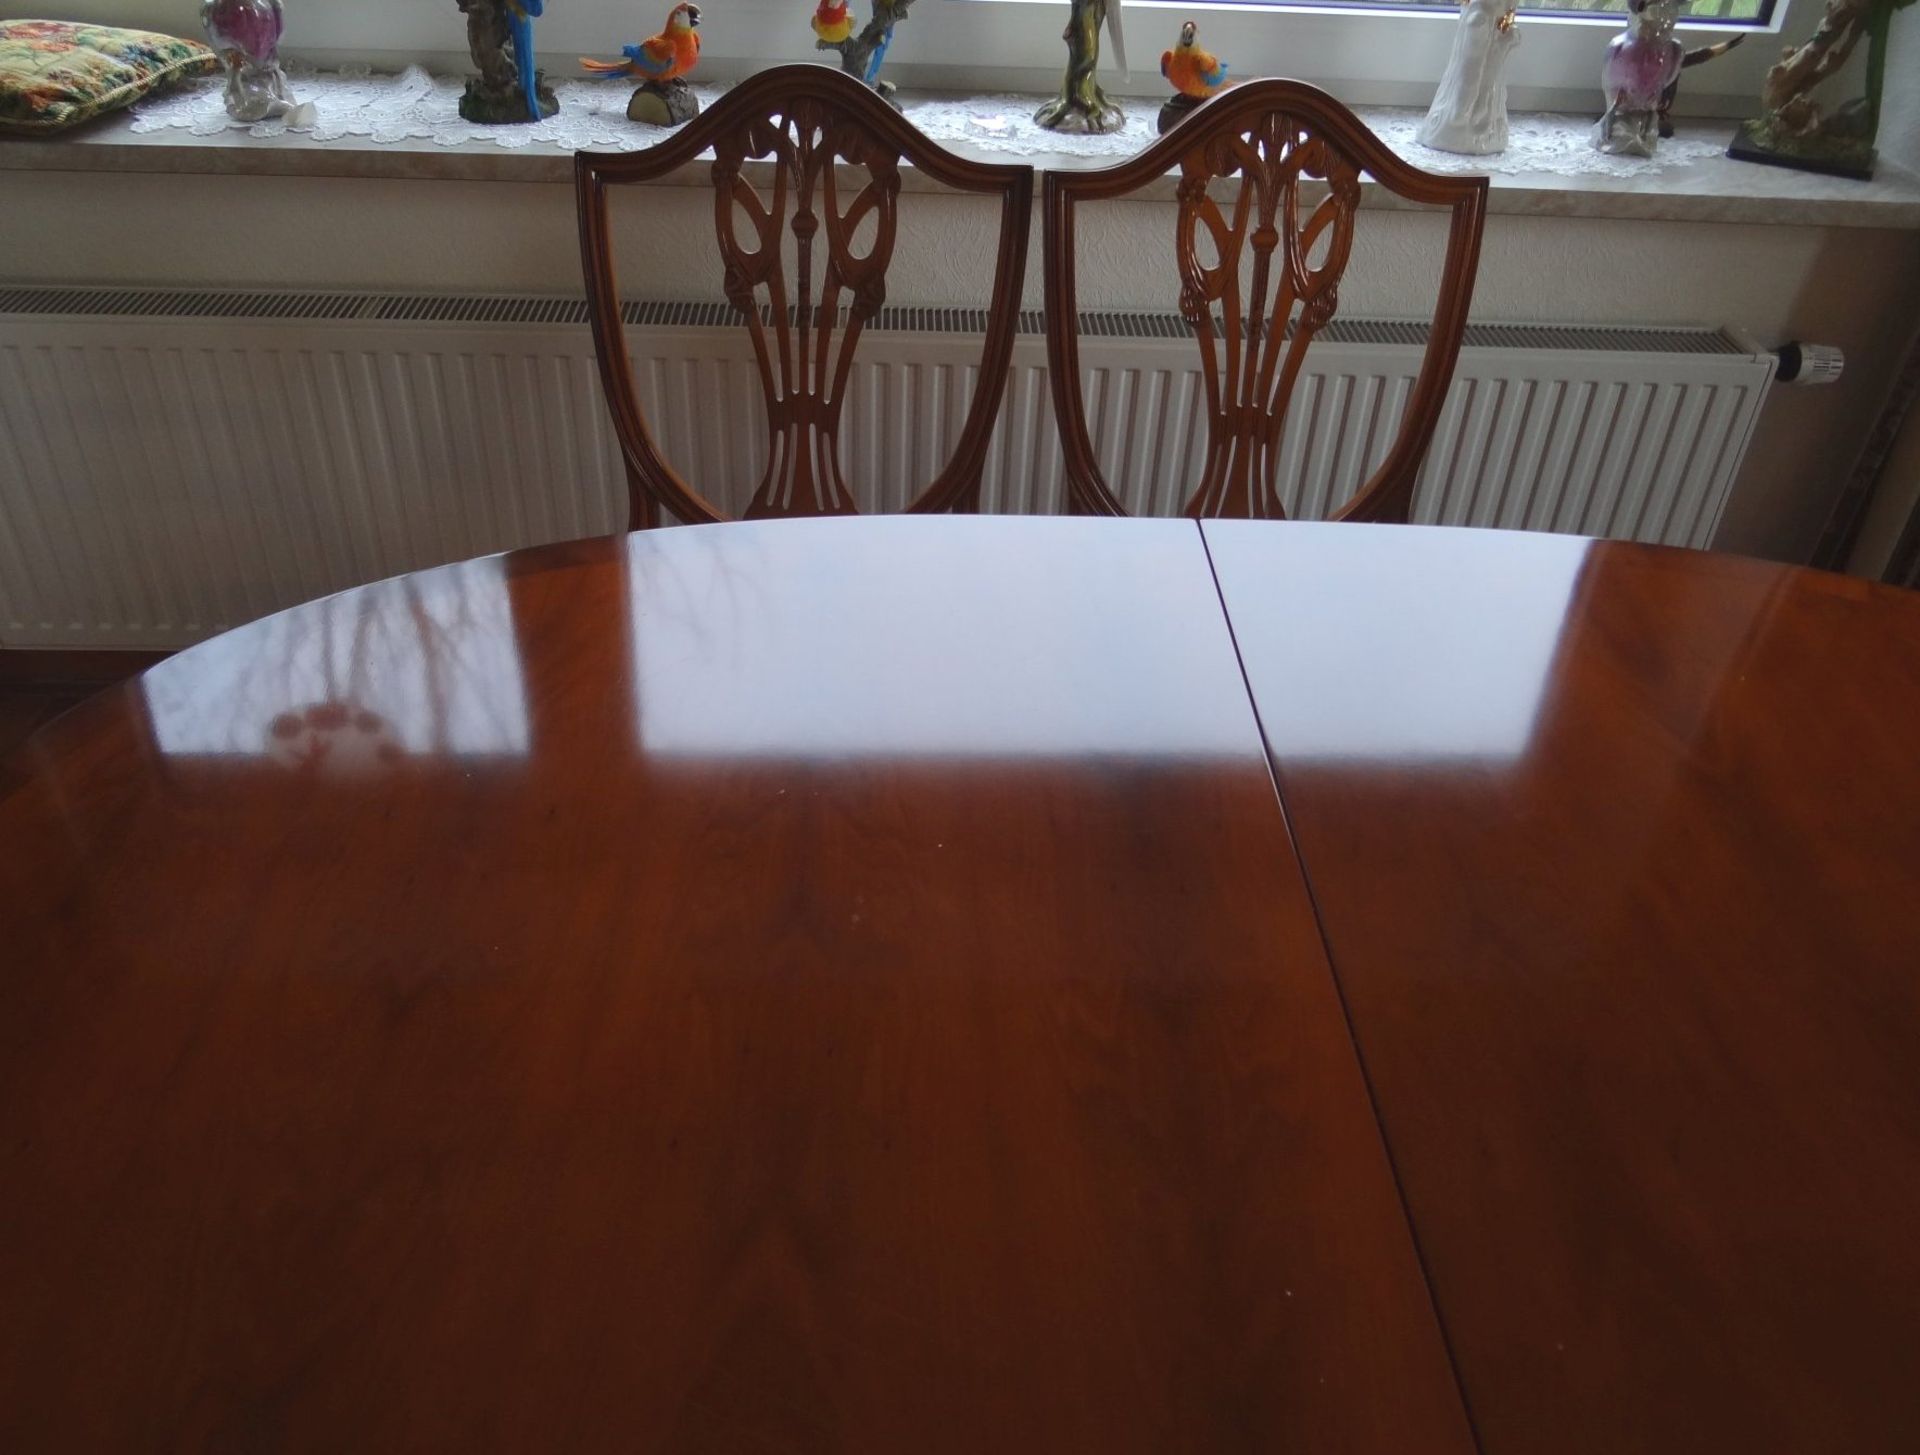 Esstisch mit 7 Stühlen im Sheraton-Stil, Kirsche, 3 Armlehnstühle, 4 Stühle, Tisch ausziehbar, - Bild 5 aus 8